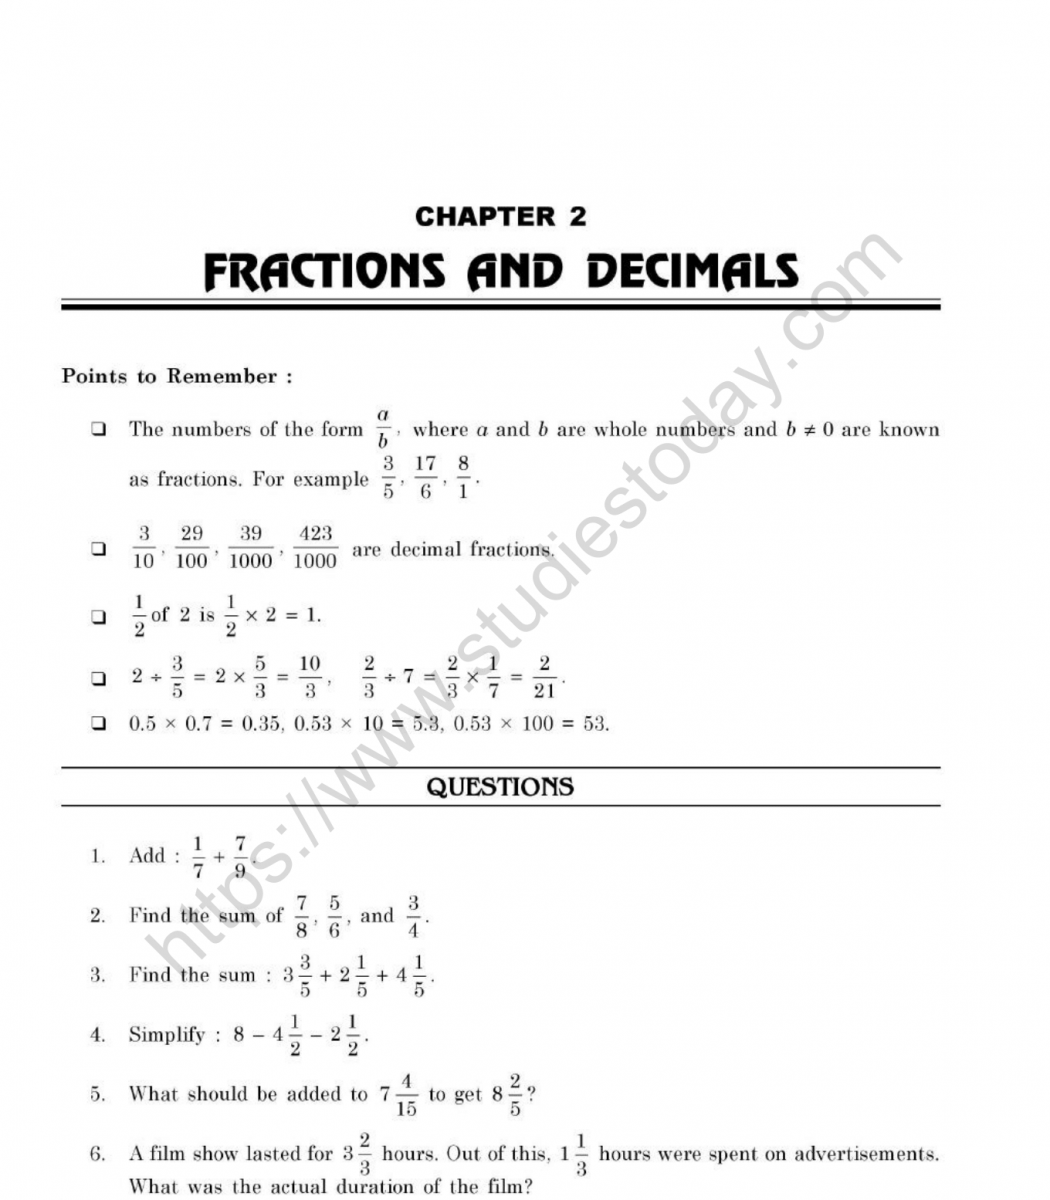 comparing-fractions-decimals-worksheets-decimals-worksheets-fractions-worksheets-comparing